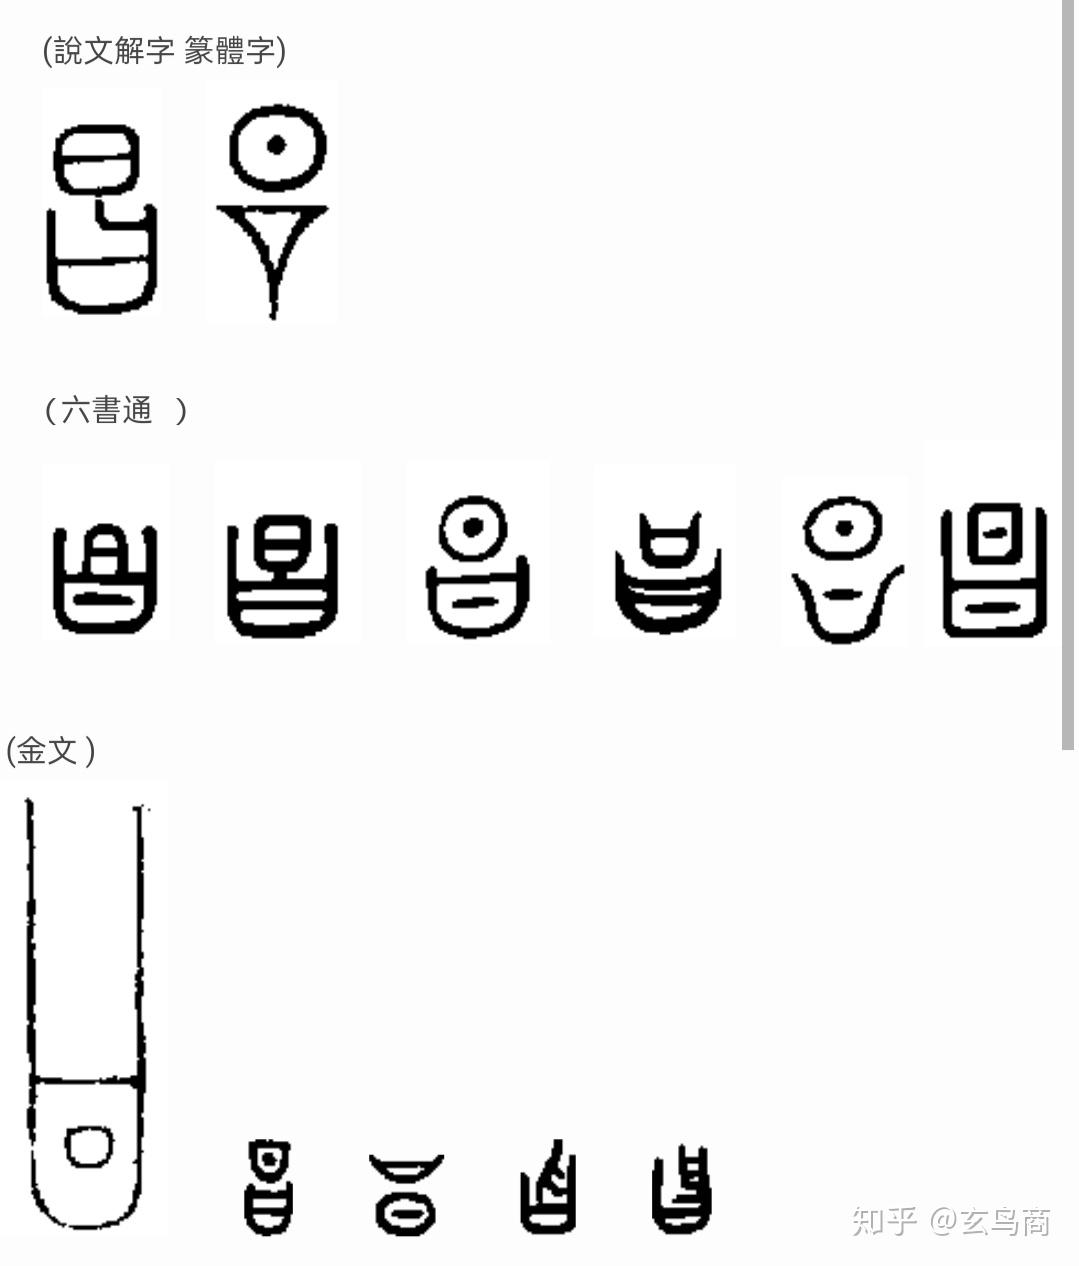 昌意二字甲骨文,金文象形图形如下:与古埃及阿蒙神的儿子风神舒的王